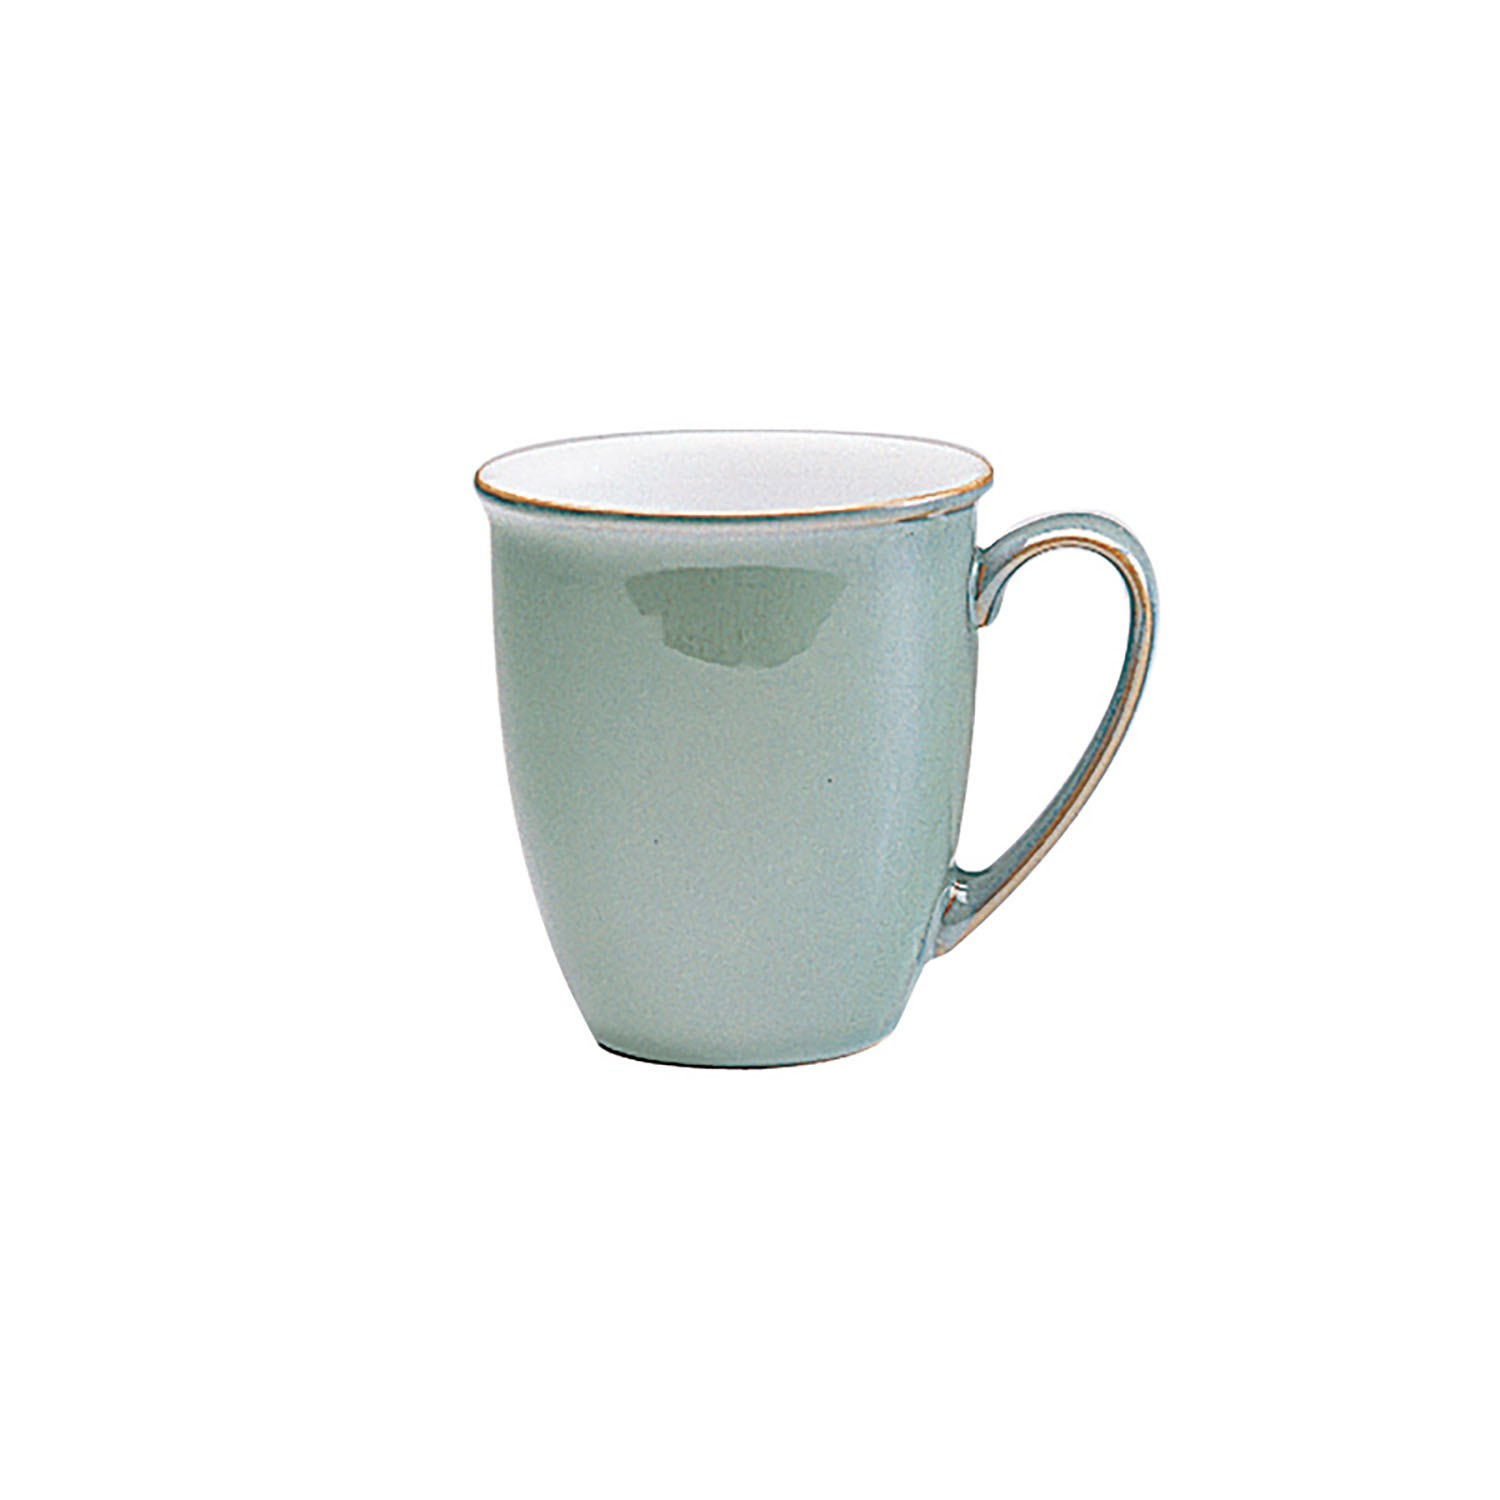 Denby Regency Green Beaker Mug LISTING FOR 1 BUT 4 AVAILABLE 